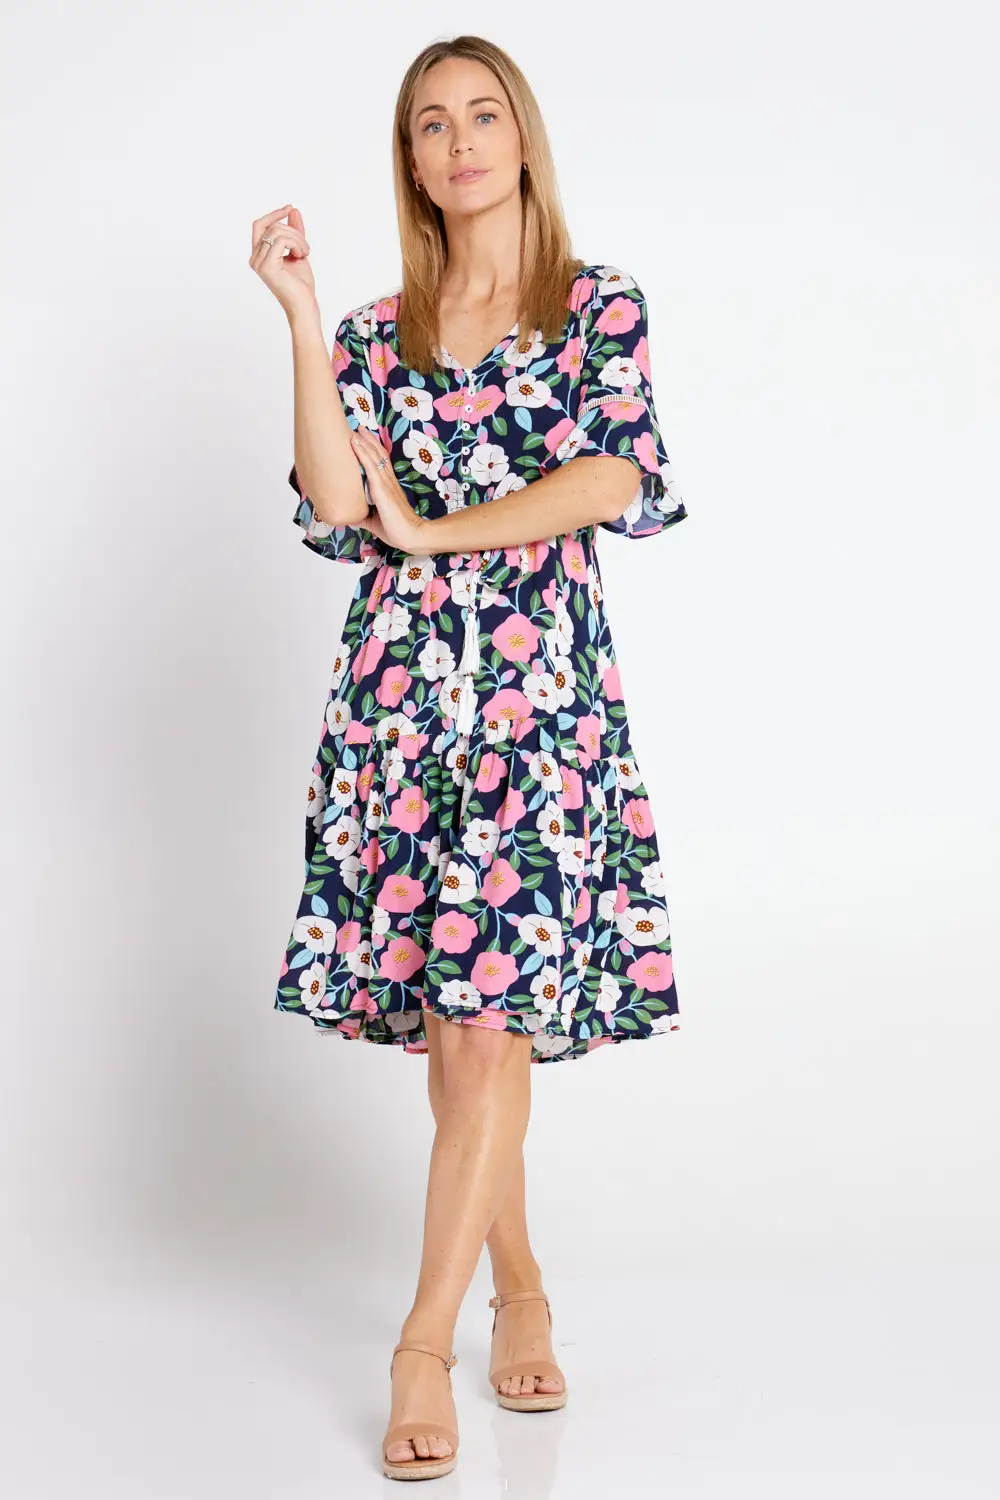 Estella Dress - Navy Floral